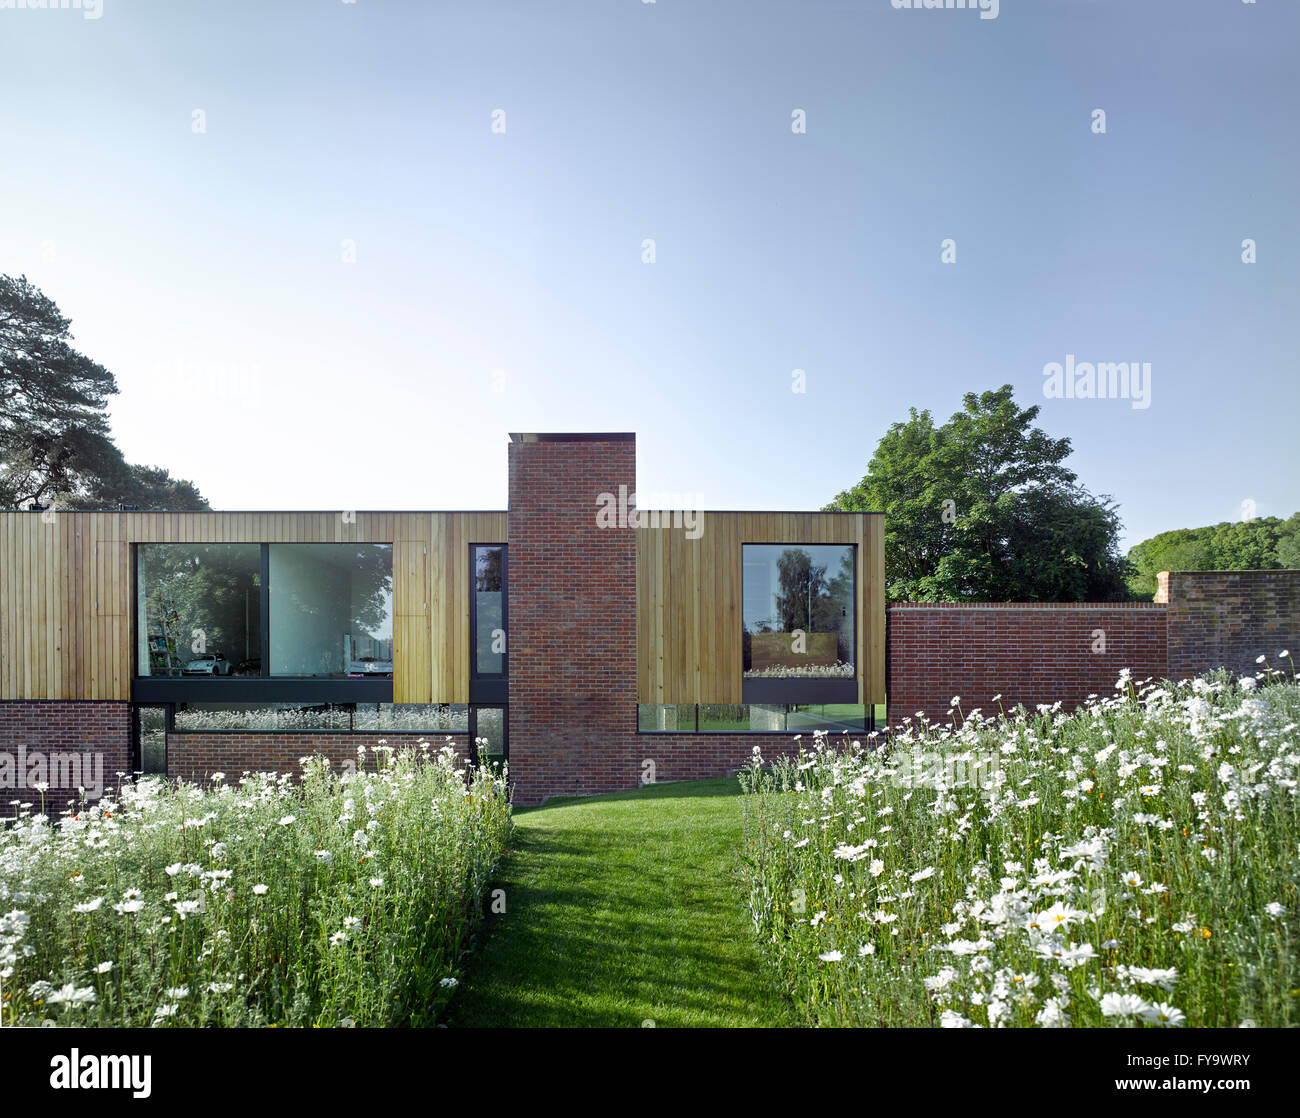 Wiesenweg in Richtung Gebäude mit Gartenmauer. Cheeran Haus, Lower Basildon, Großbritannien. Architekt: John Pardey Architekten, 2015. Stockfoto